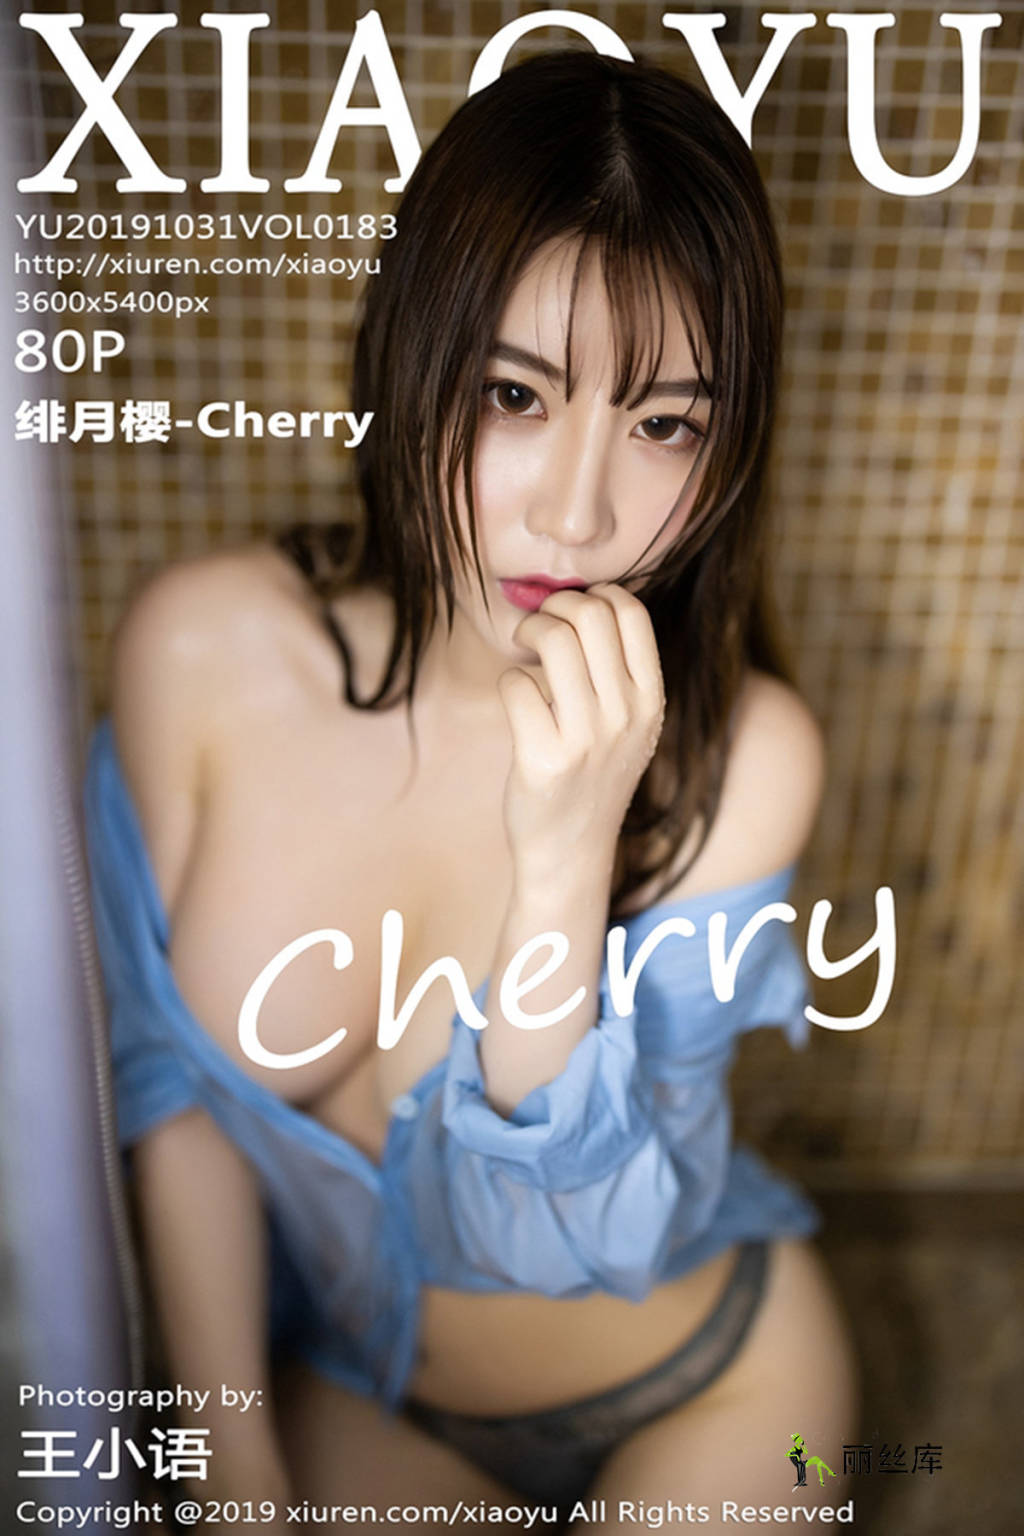 语画界XiaoYu 2019.10.31  No.183 绯月樱-Cherry_丽丝库